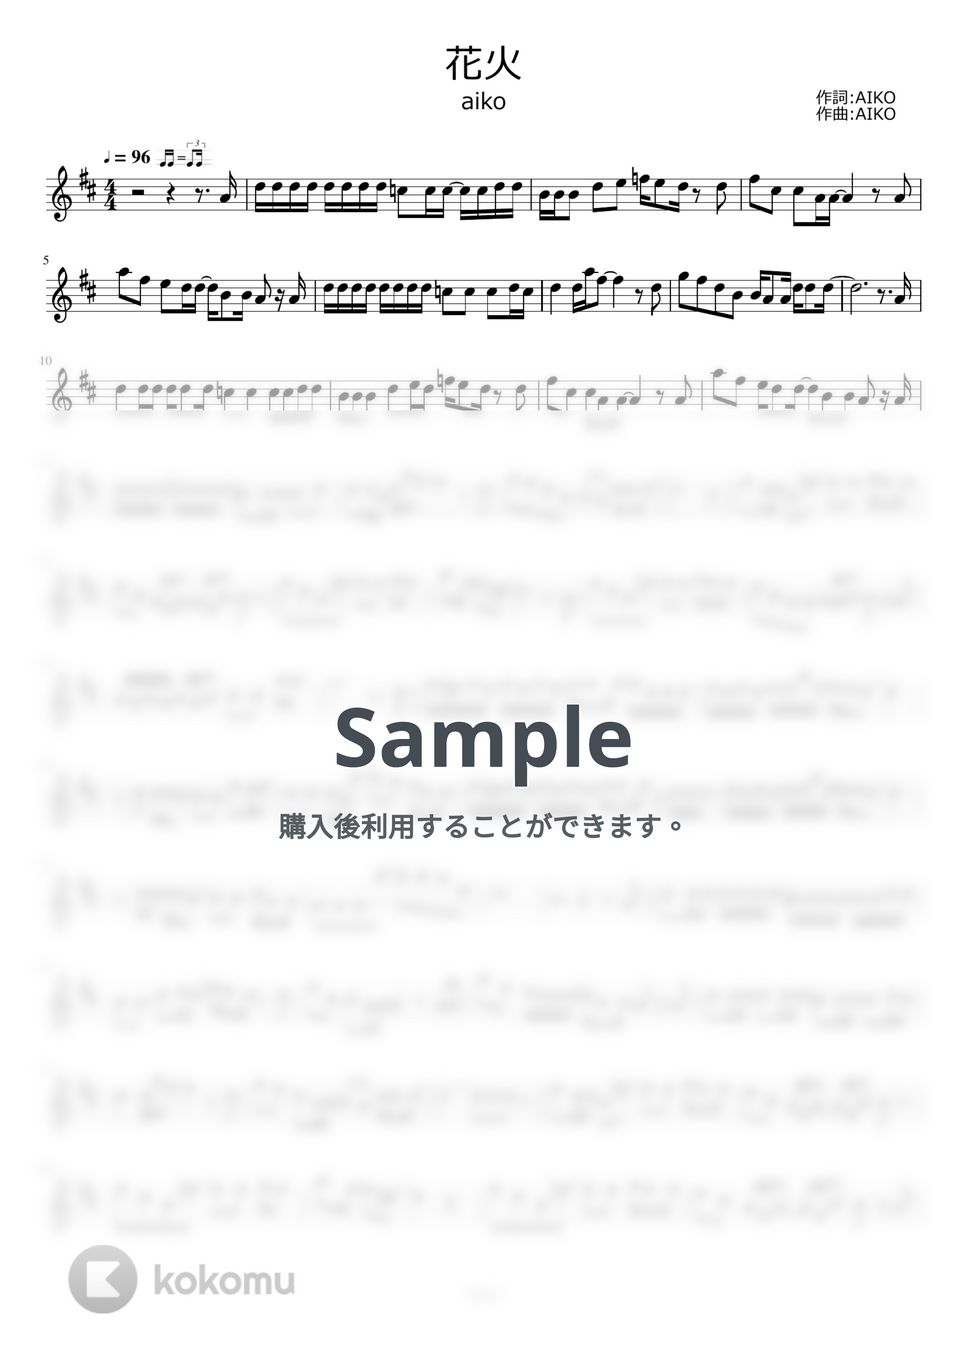 aiko - 花火 by ayako music school